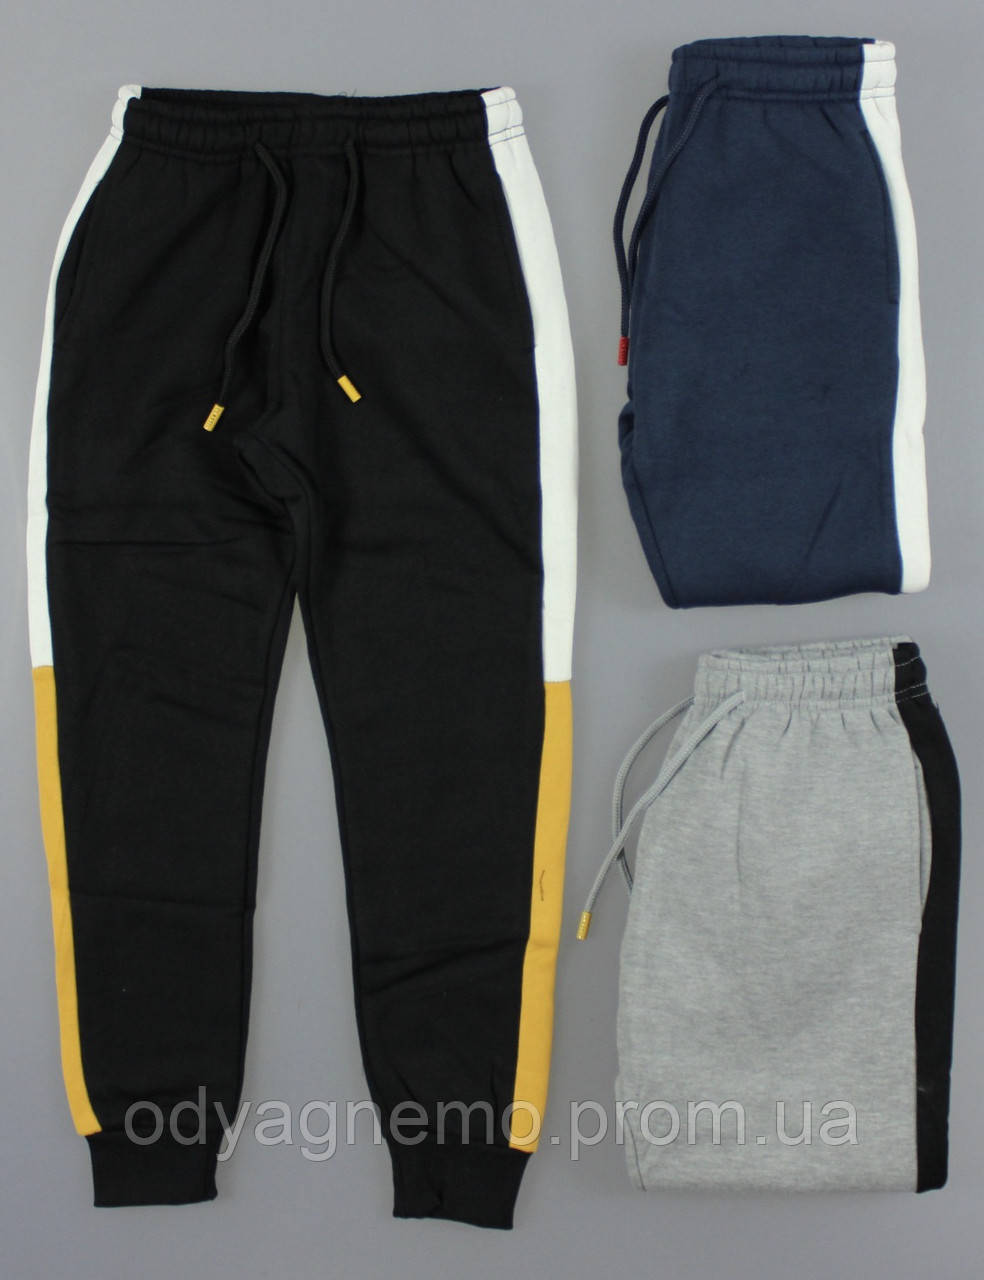 Спортивные брюки с начесом для мальчиков Glo-Story оптом, 134-164 рр. Артикул: BRT9181, фото 1